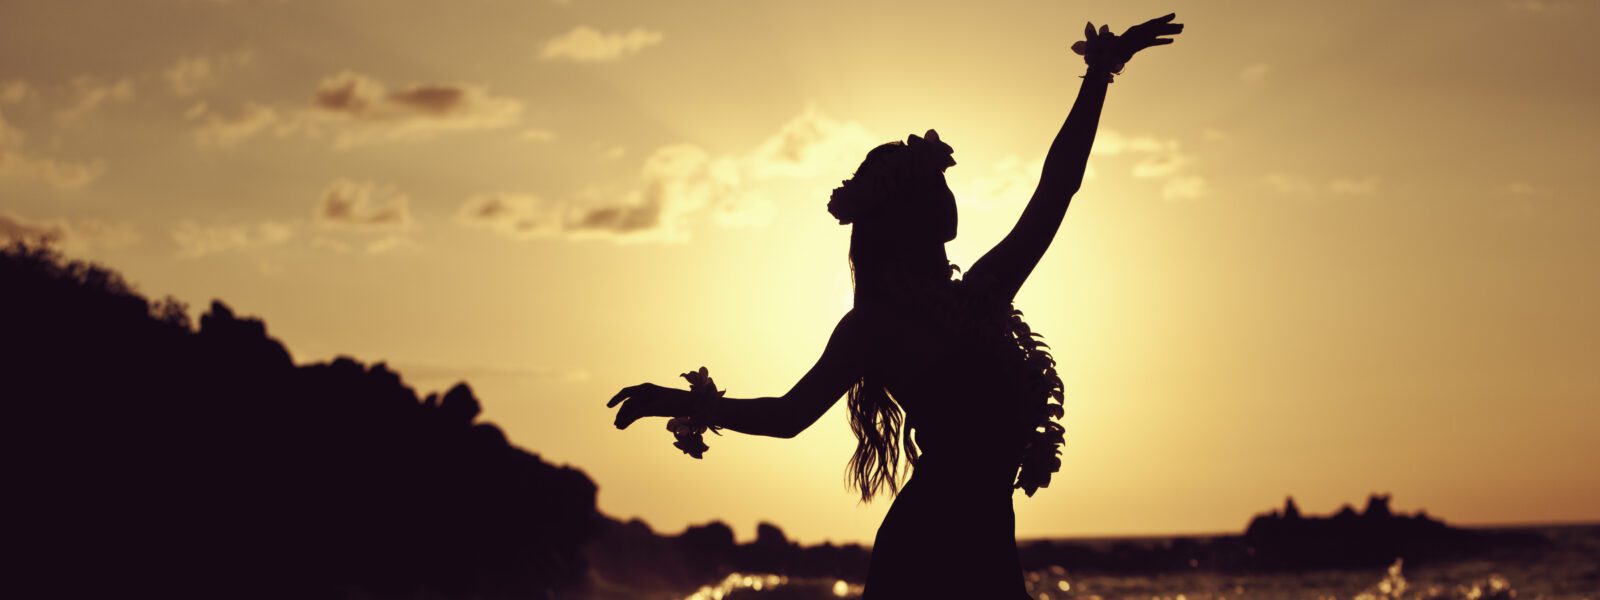 Danseuse en contre-jour au soleil couchant, Polynésie française